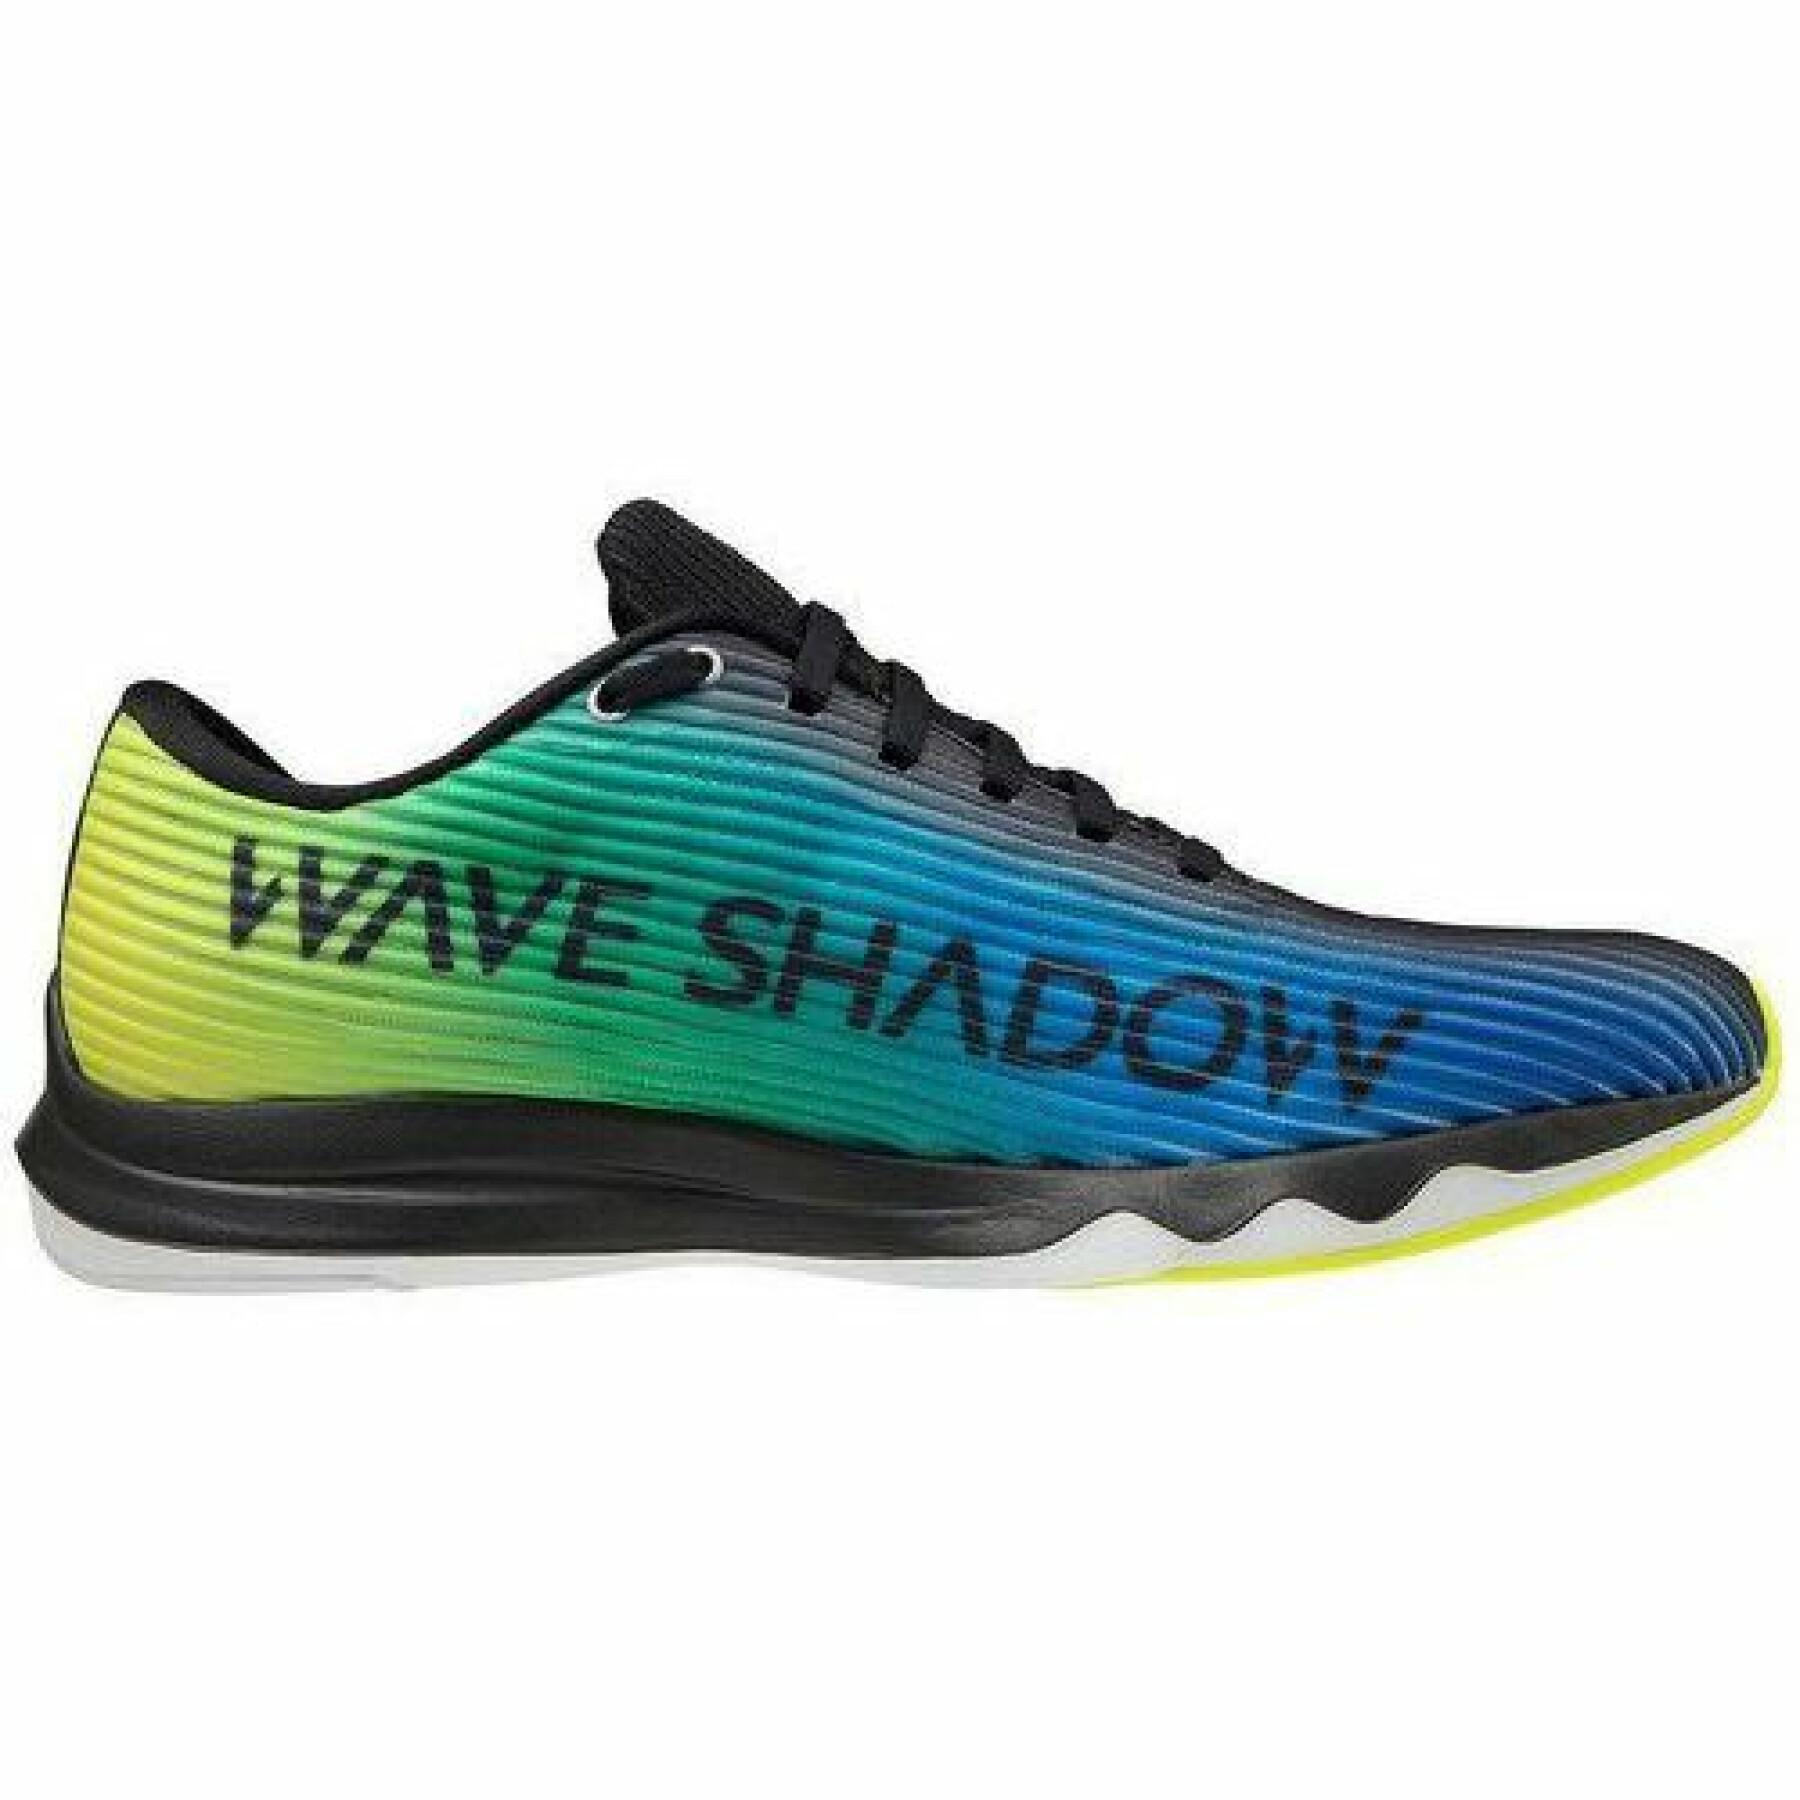 Shoes Mizuno wave shadow 4